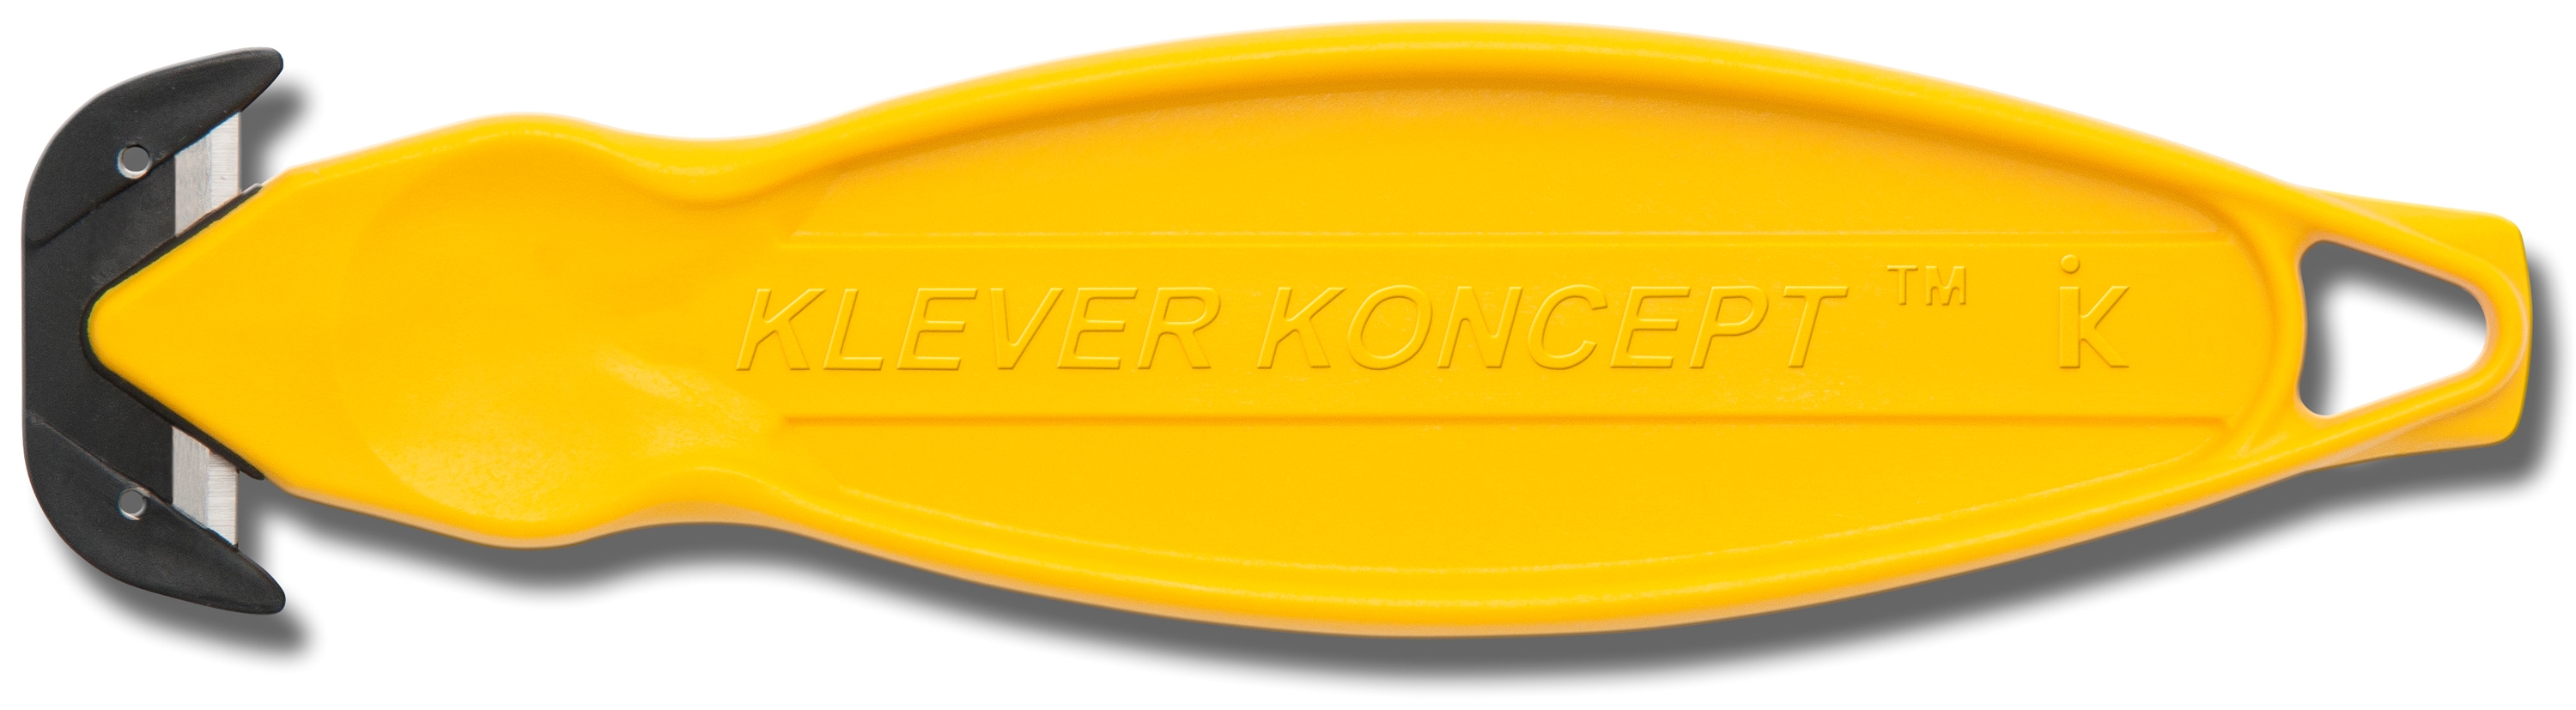 Afbeelding van Klever Kutter de handige dozen opener koncept geel